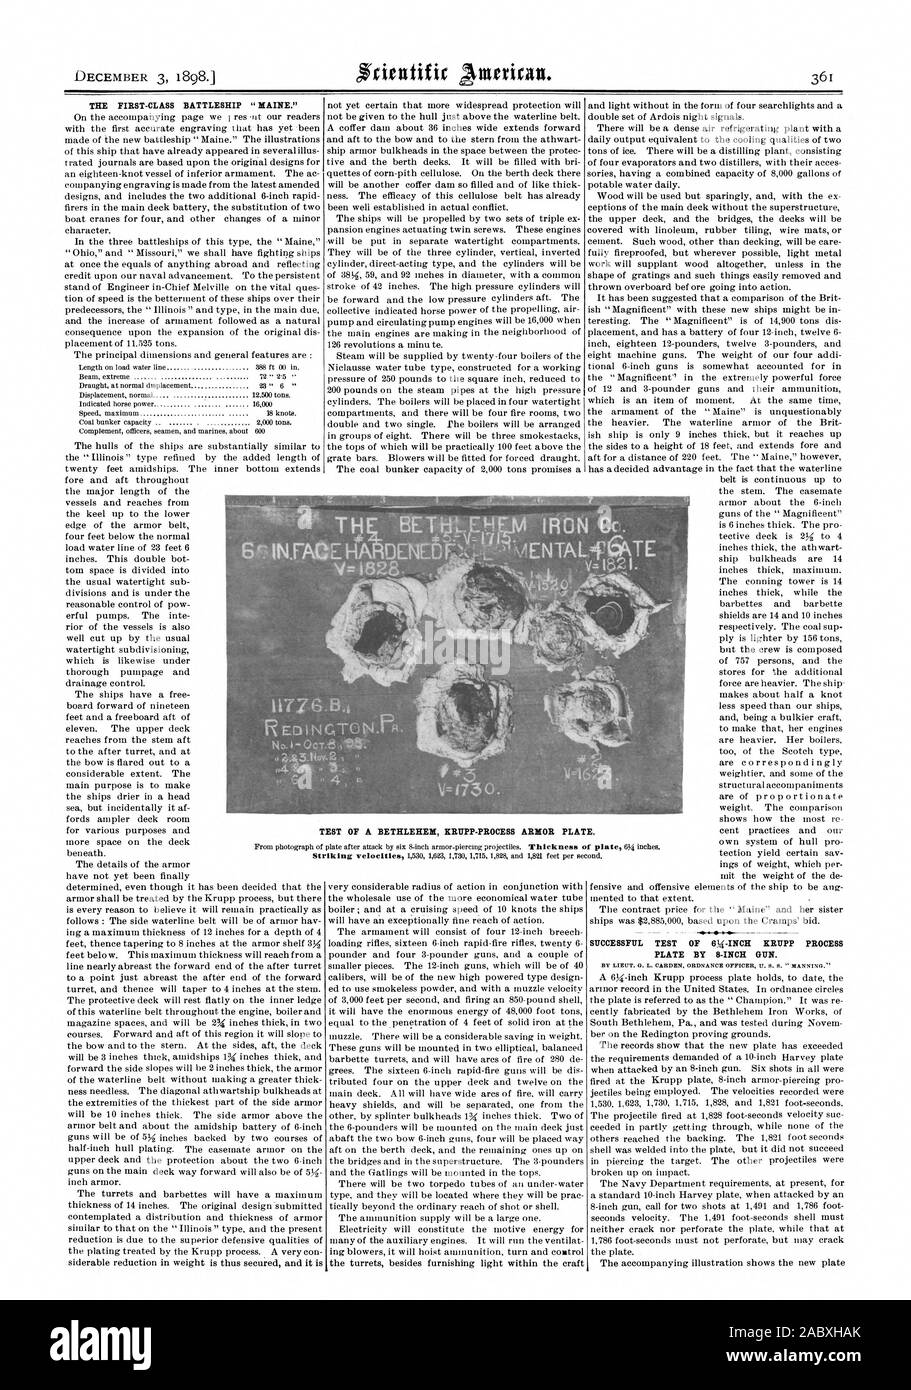 Die ERSTE KLASSE SCHLACHTSCHIFF "Maine." ERFOLGREICHER TEST DES 6k-ZOLL KRUPP PROZESS PLATTE, 8-INCH GUN. E.TEST EINER BETHLEHEM KRUPP-PROZESS RÜSTUNG PLAT, Scientific American, 1898-12-03 Stockfoto